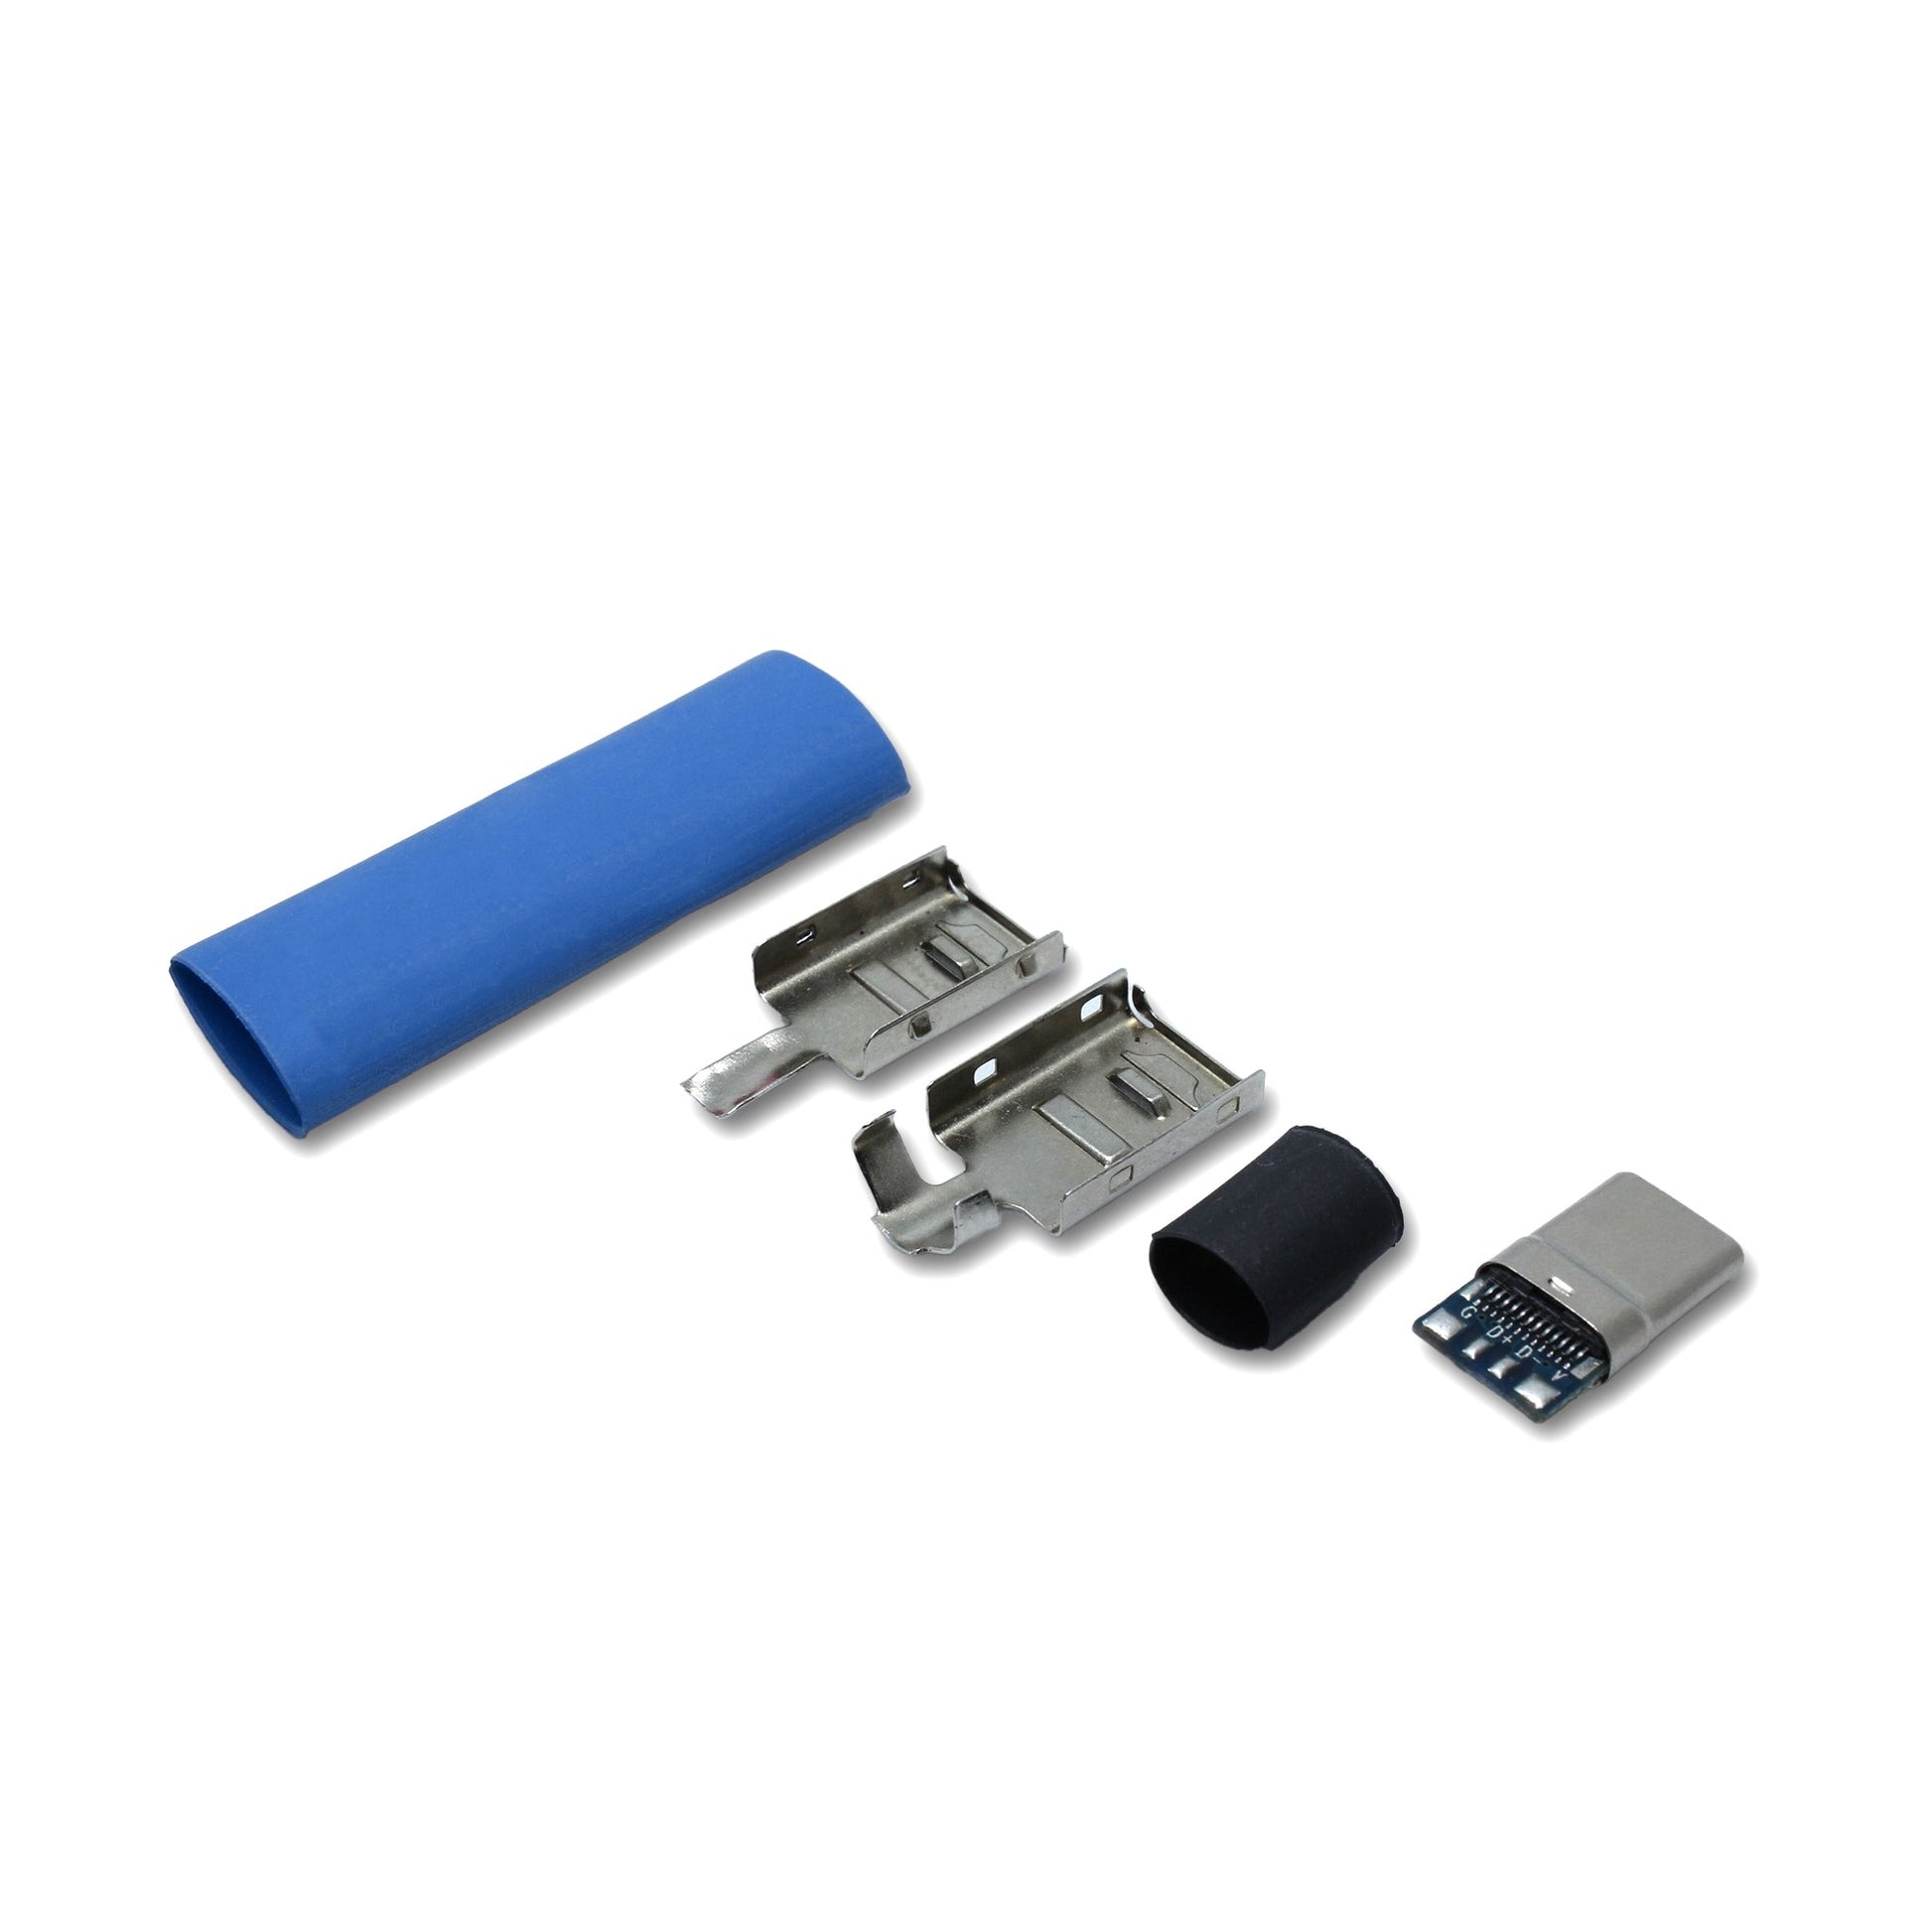 EIn recable USB C Host Stecker Set mit Schrumpfschlauch in der Farbe blau